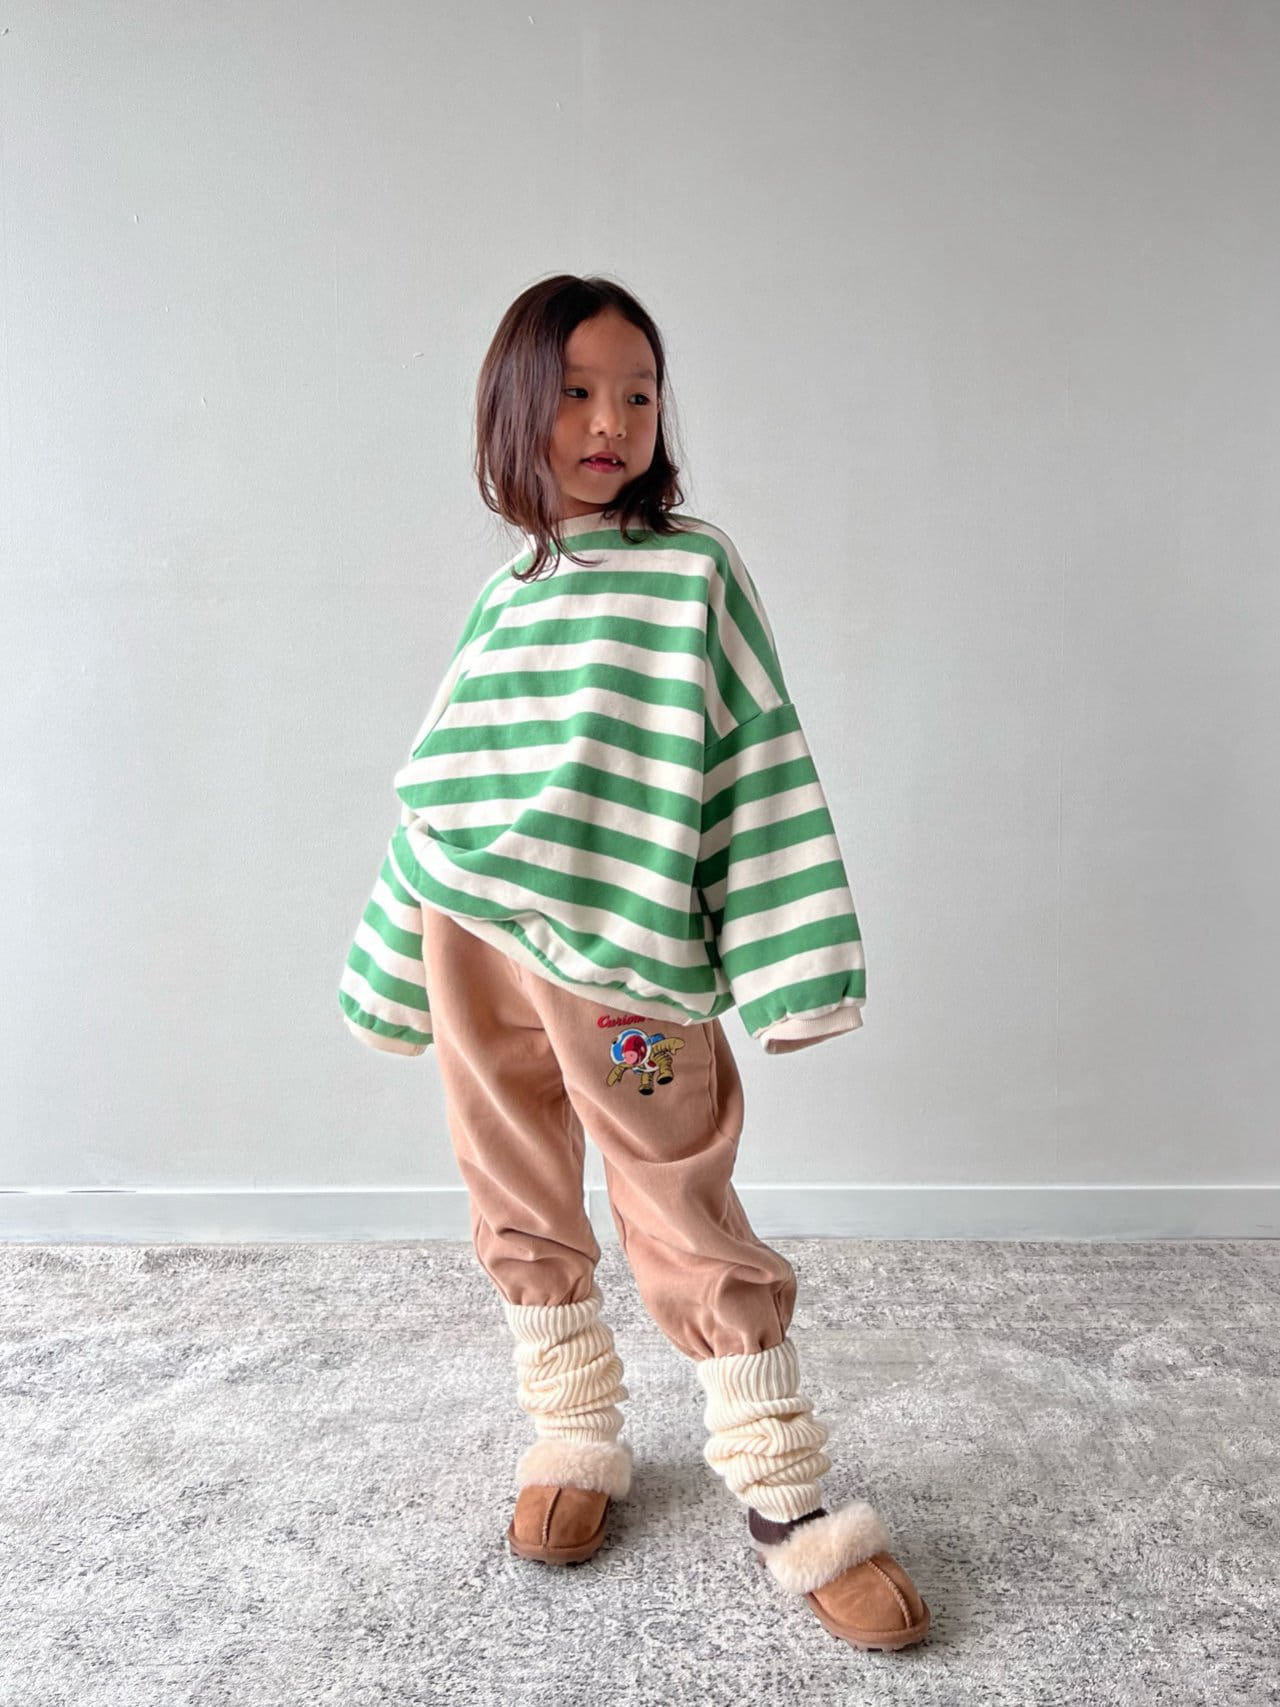 Bon Bon Butik - Korean Children Fashion - #todddlerfashion - Monkey Jogger Pants - 8